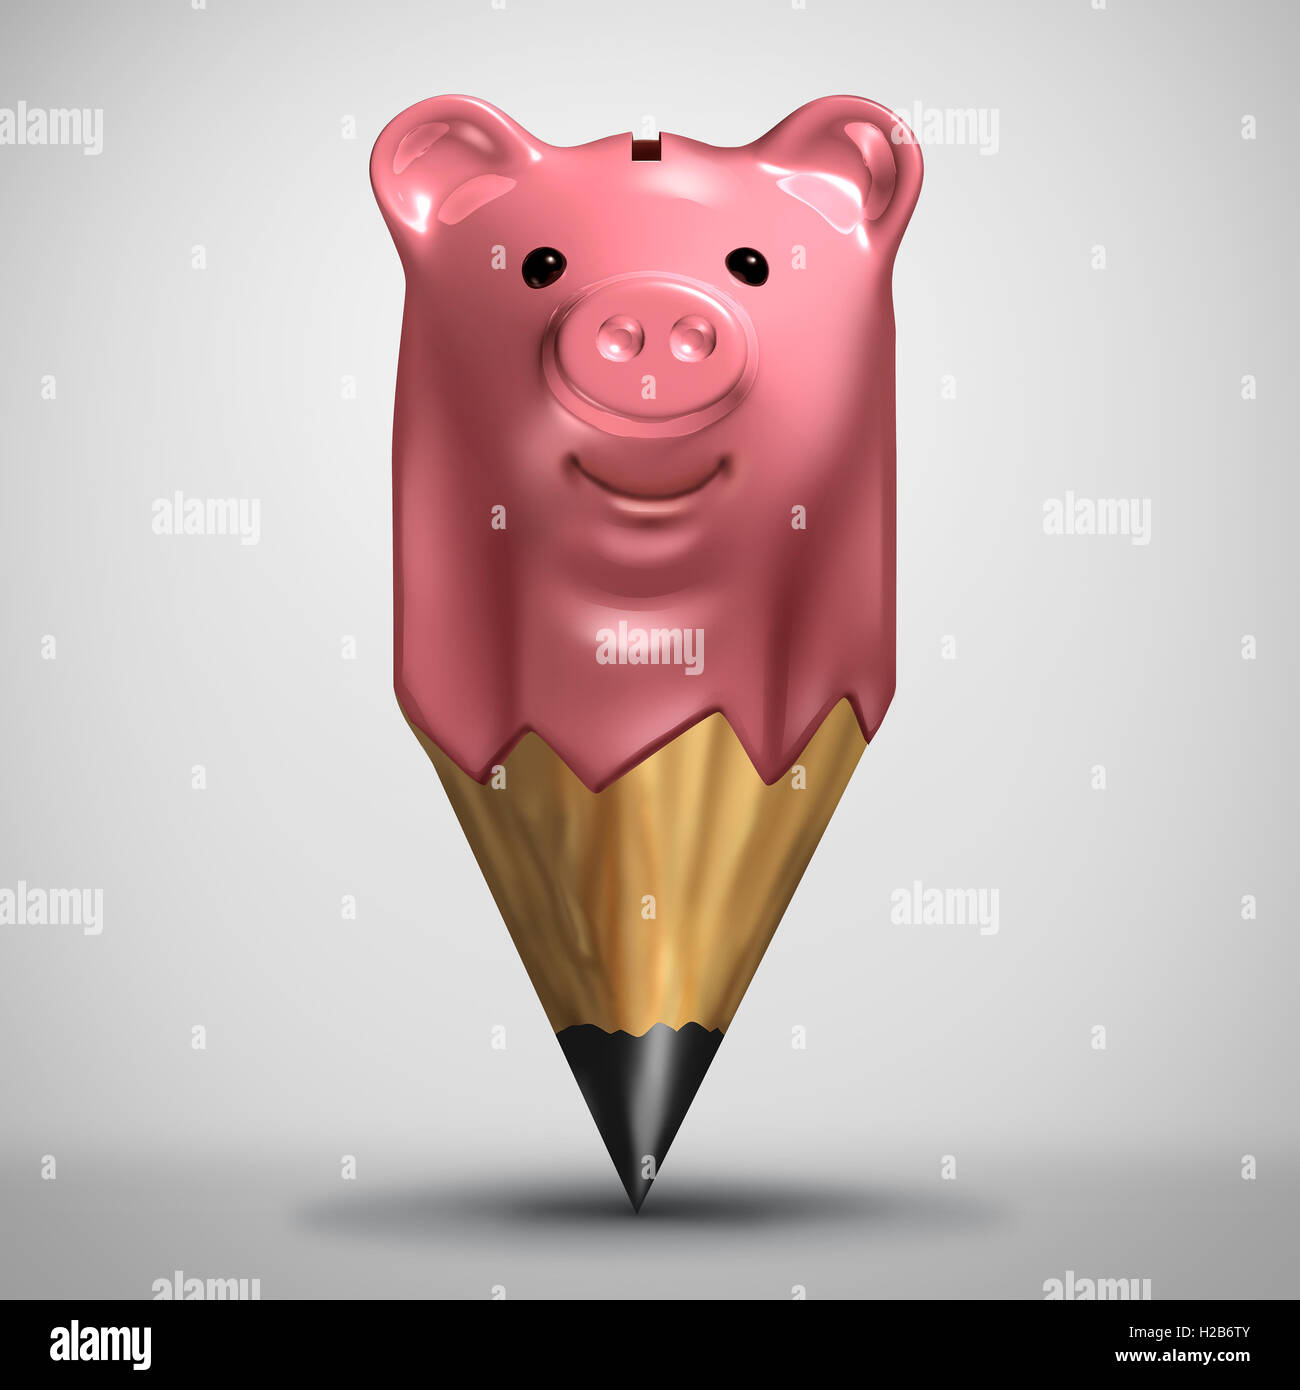 Planification et d'investissement épargne symbole d'épargne comme une tirelire en forme de crayon comme une stratégie financière et comptabilité d'entreprise,ou planificateur de budget famille métaphore 3D illustration. Banque D'Images